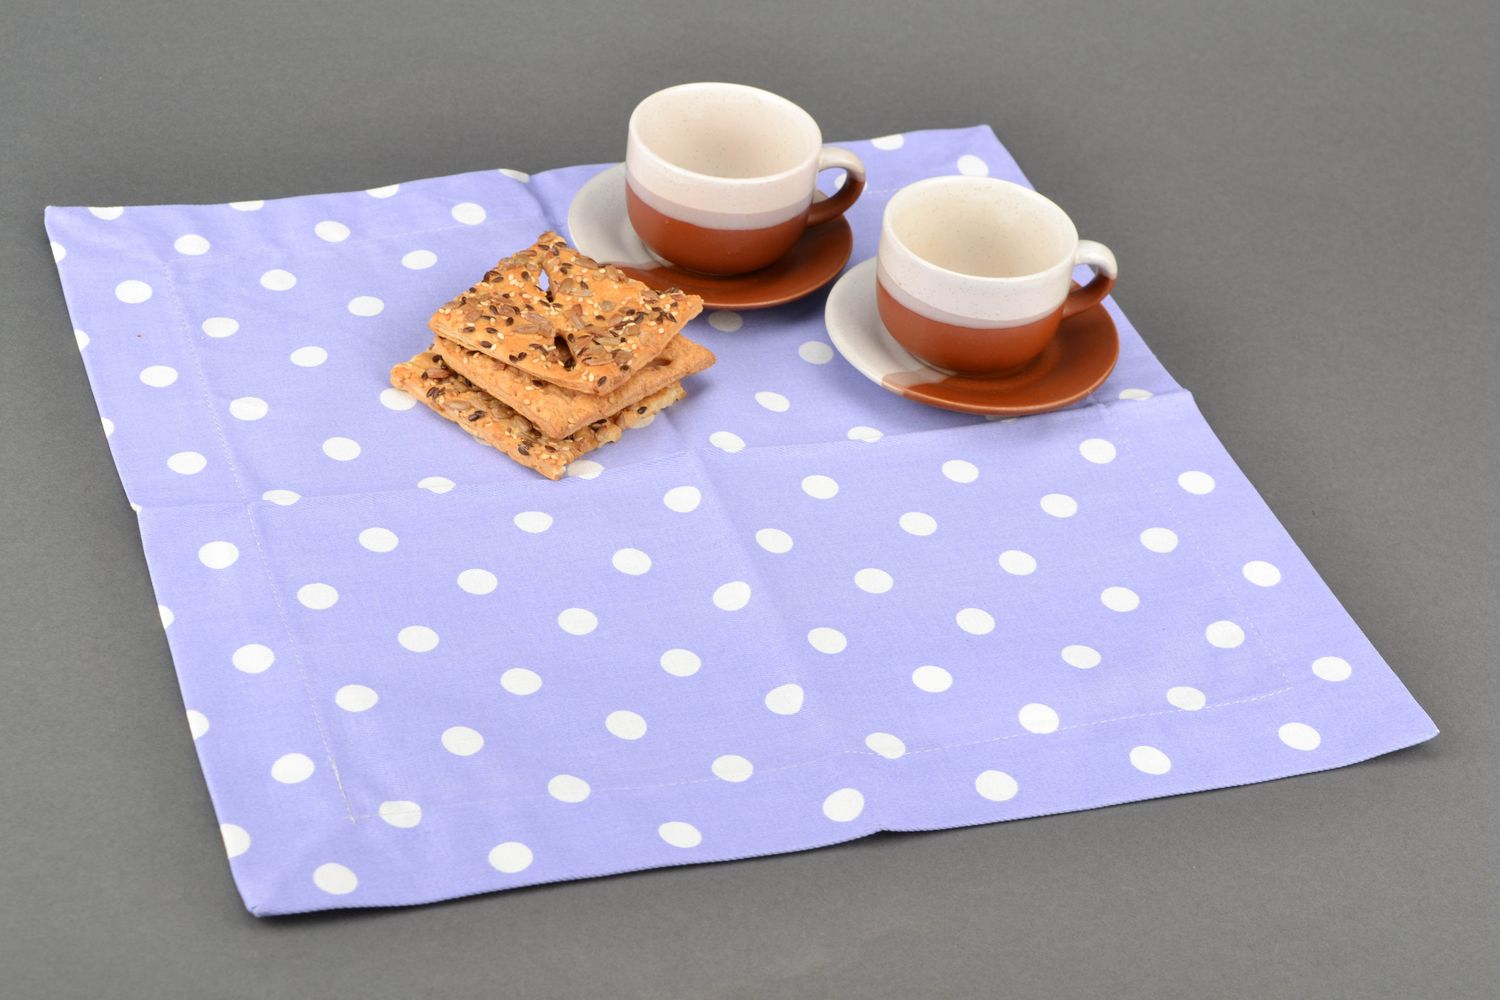 Текстильная салфетка из хлопка на стол фото 1